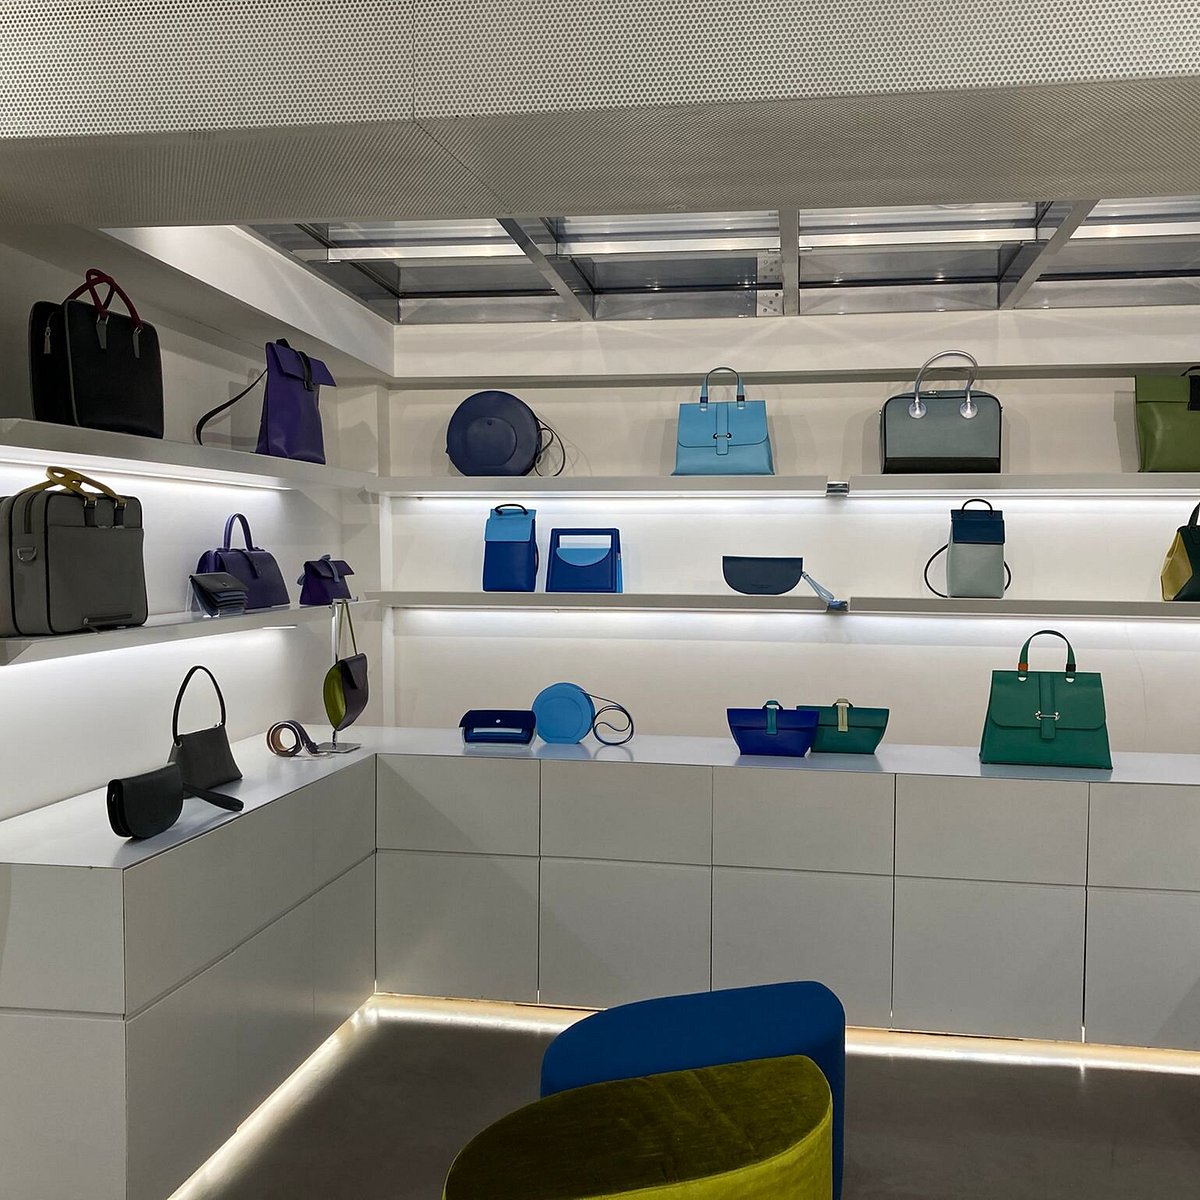 Hester van Eeghen Leather Design: Bags, Wallets & More